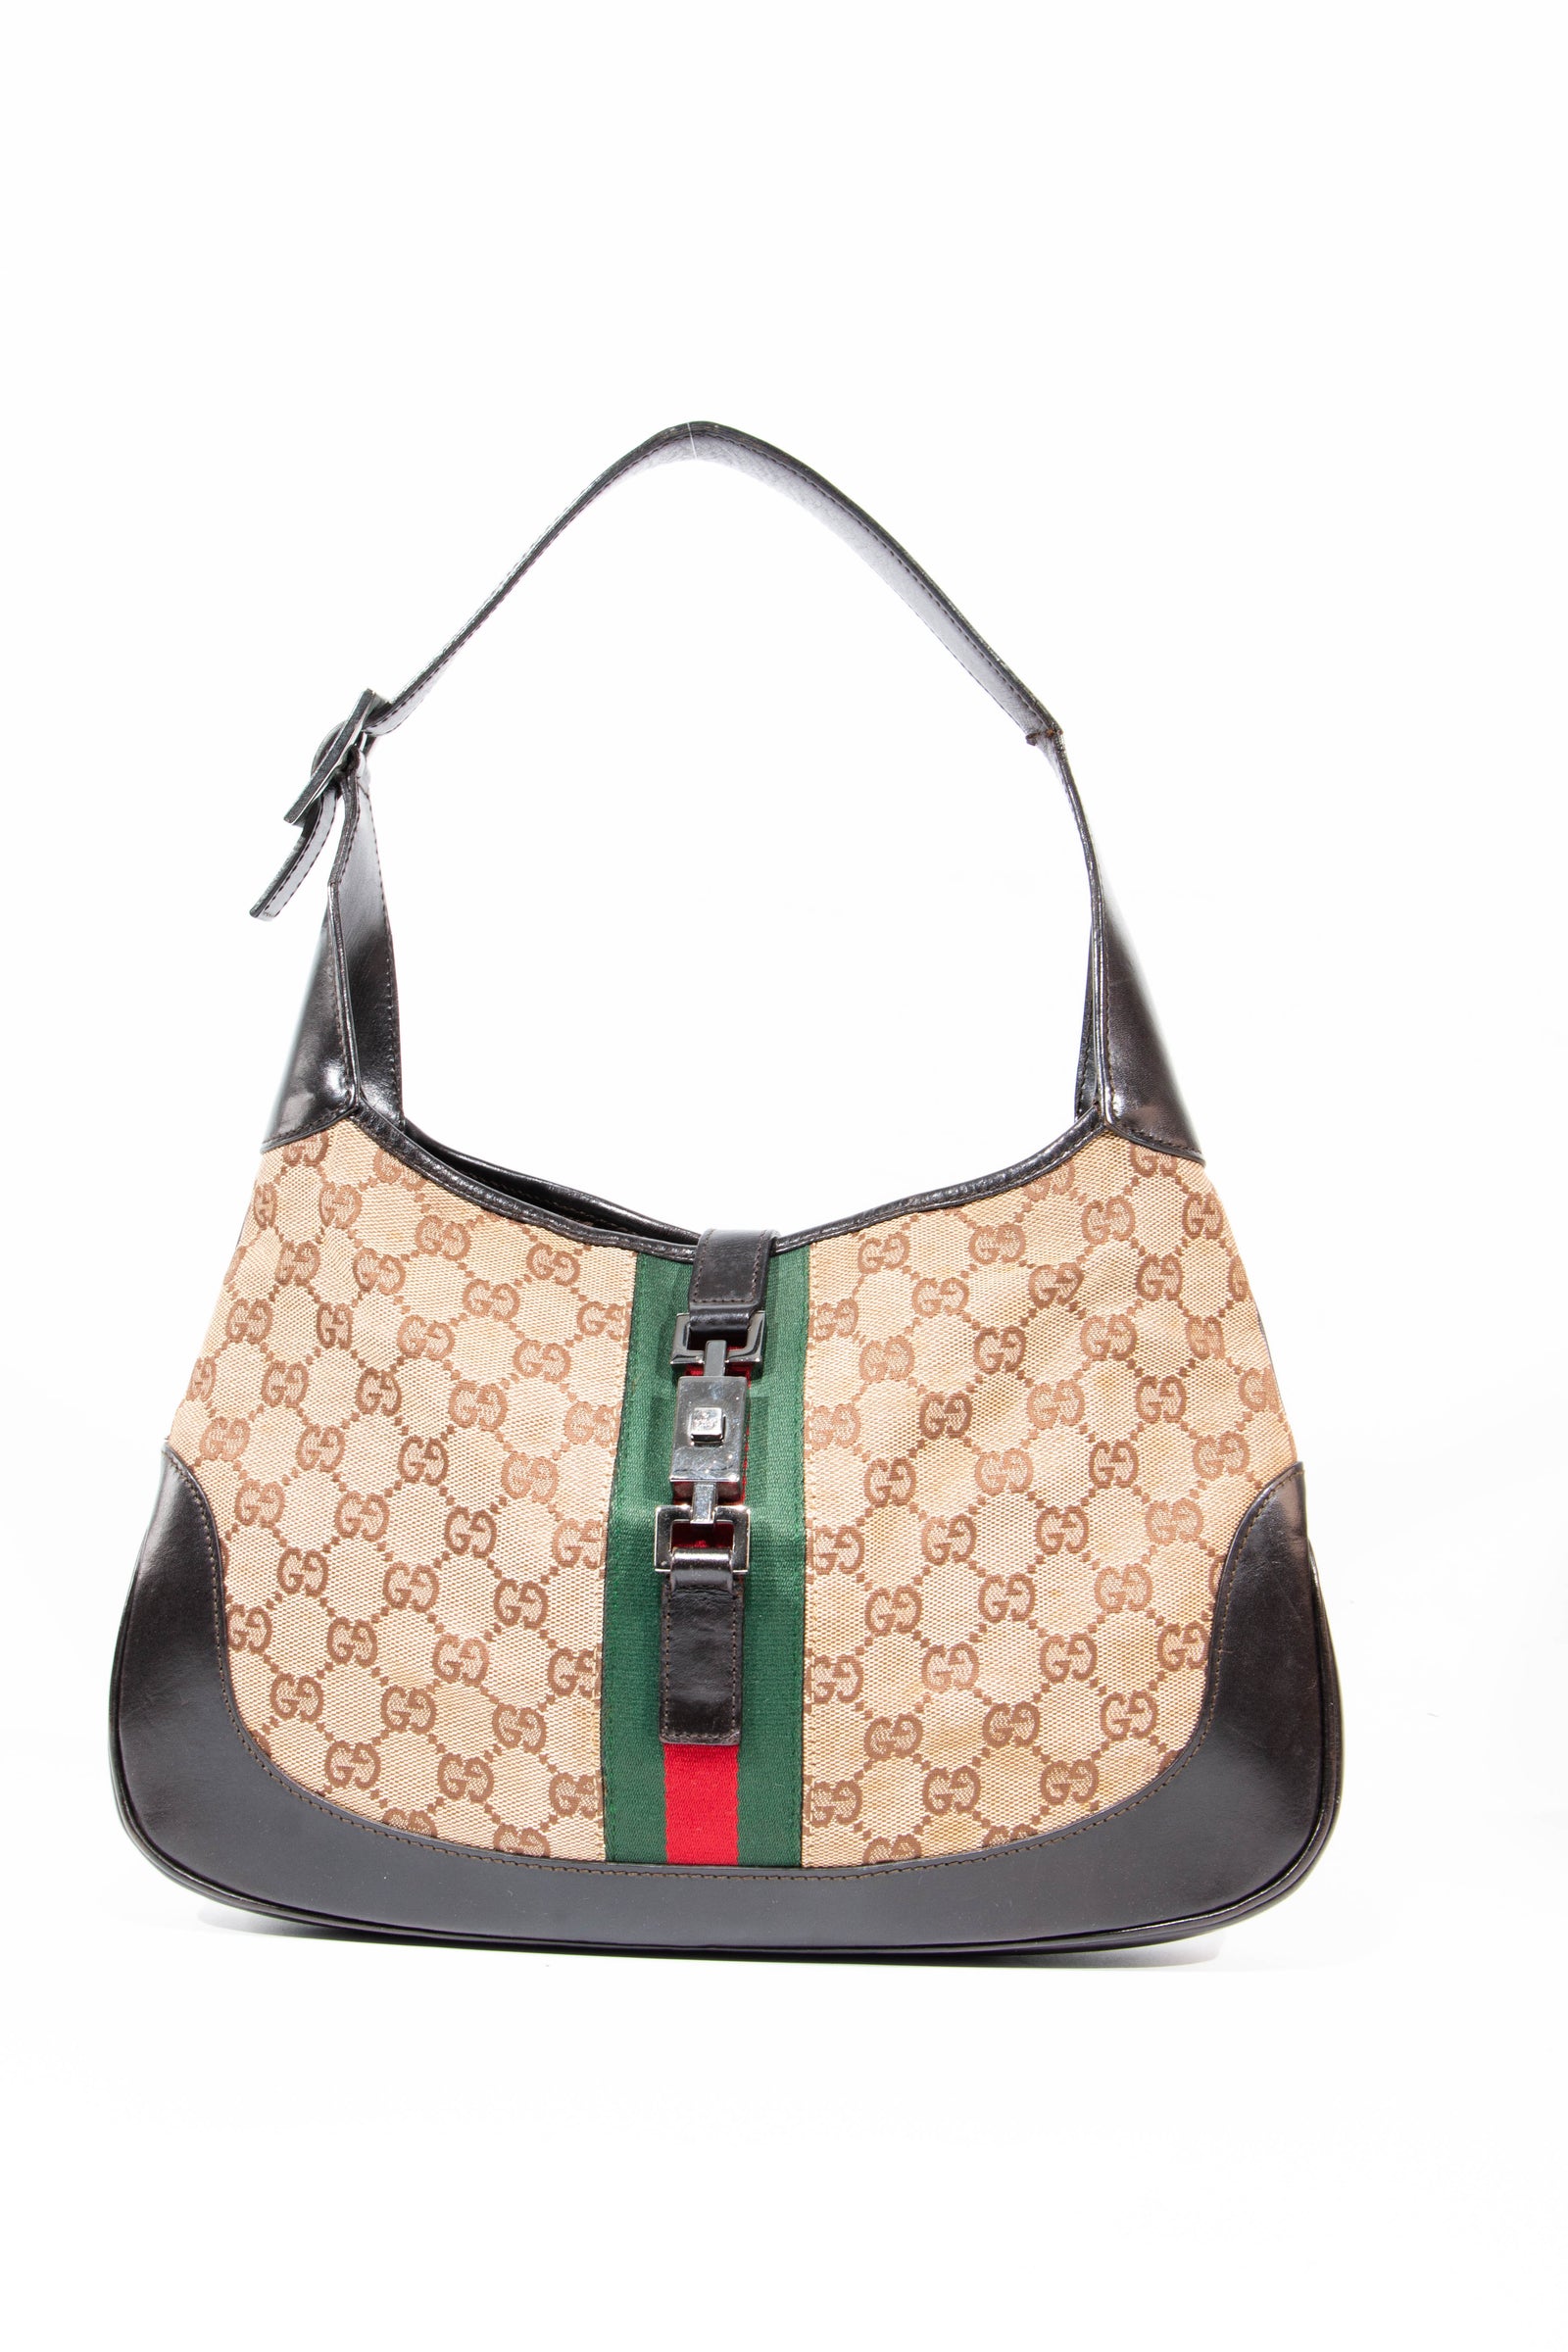 Gucci GG Supreme Mini Trunk Bag With - D' Borse Boutique